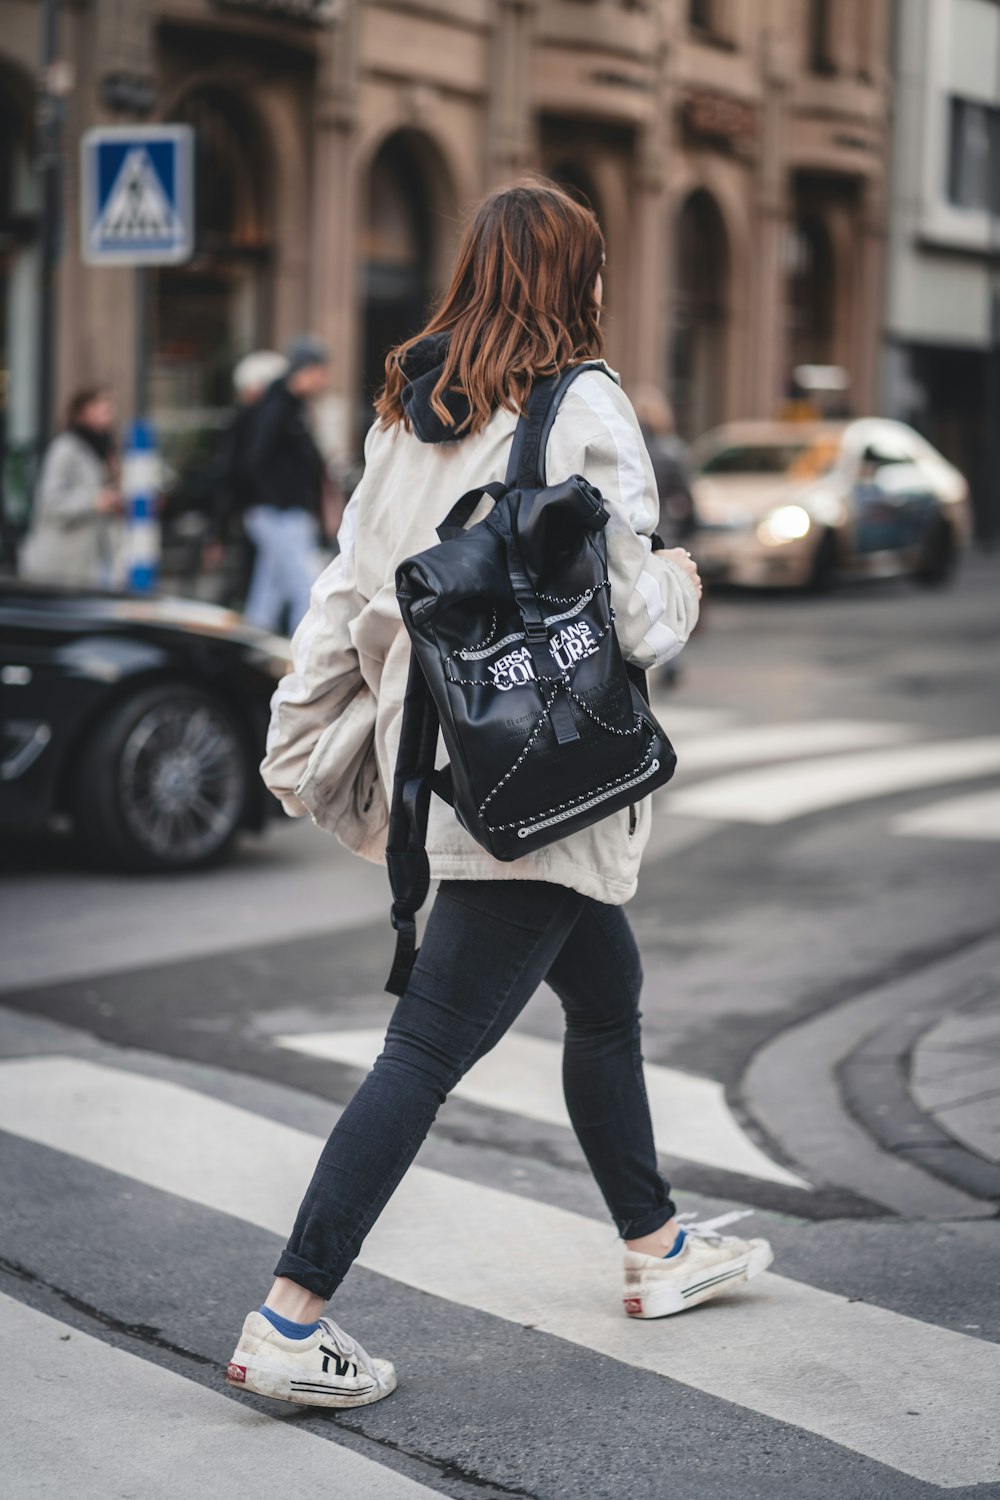 donna in pantaloni neri e giacca bianca che cammina sul marciapiede durante il giorno